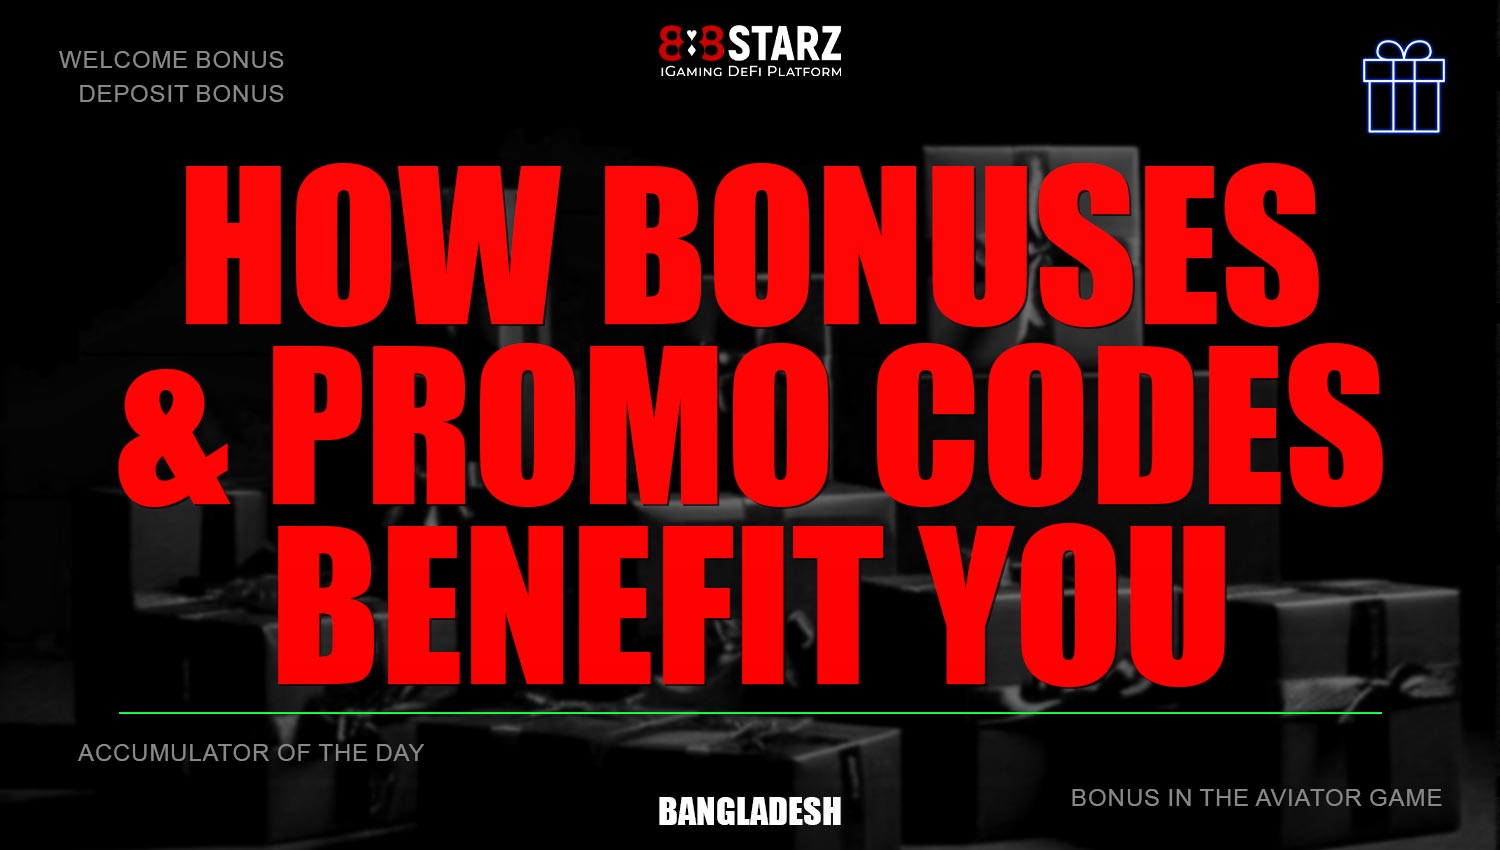 Benefits of 888Starz bonuses and promo codes.